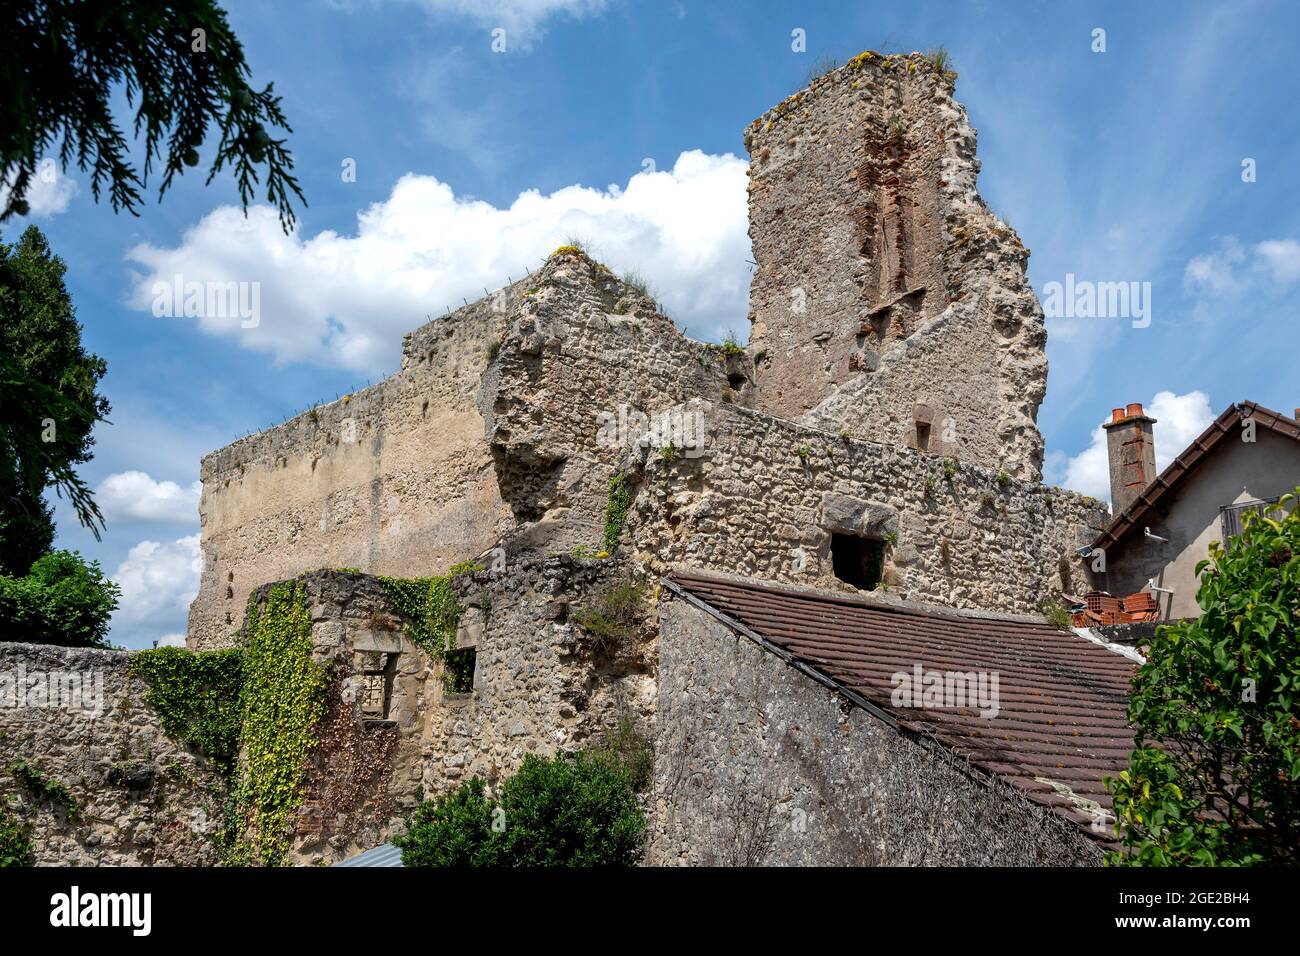 Ruins of the castle of Verneuil-en-Bourbonnais, Allier department, Auvergne-Rhone-Alpes, France Stock Photo